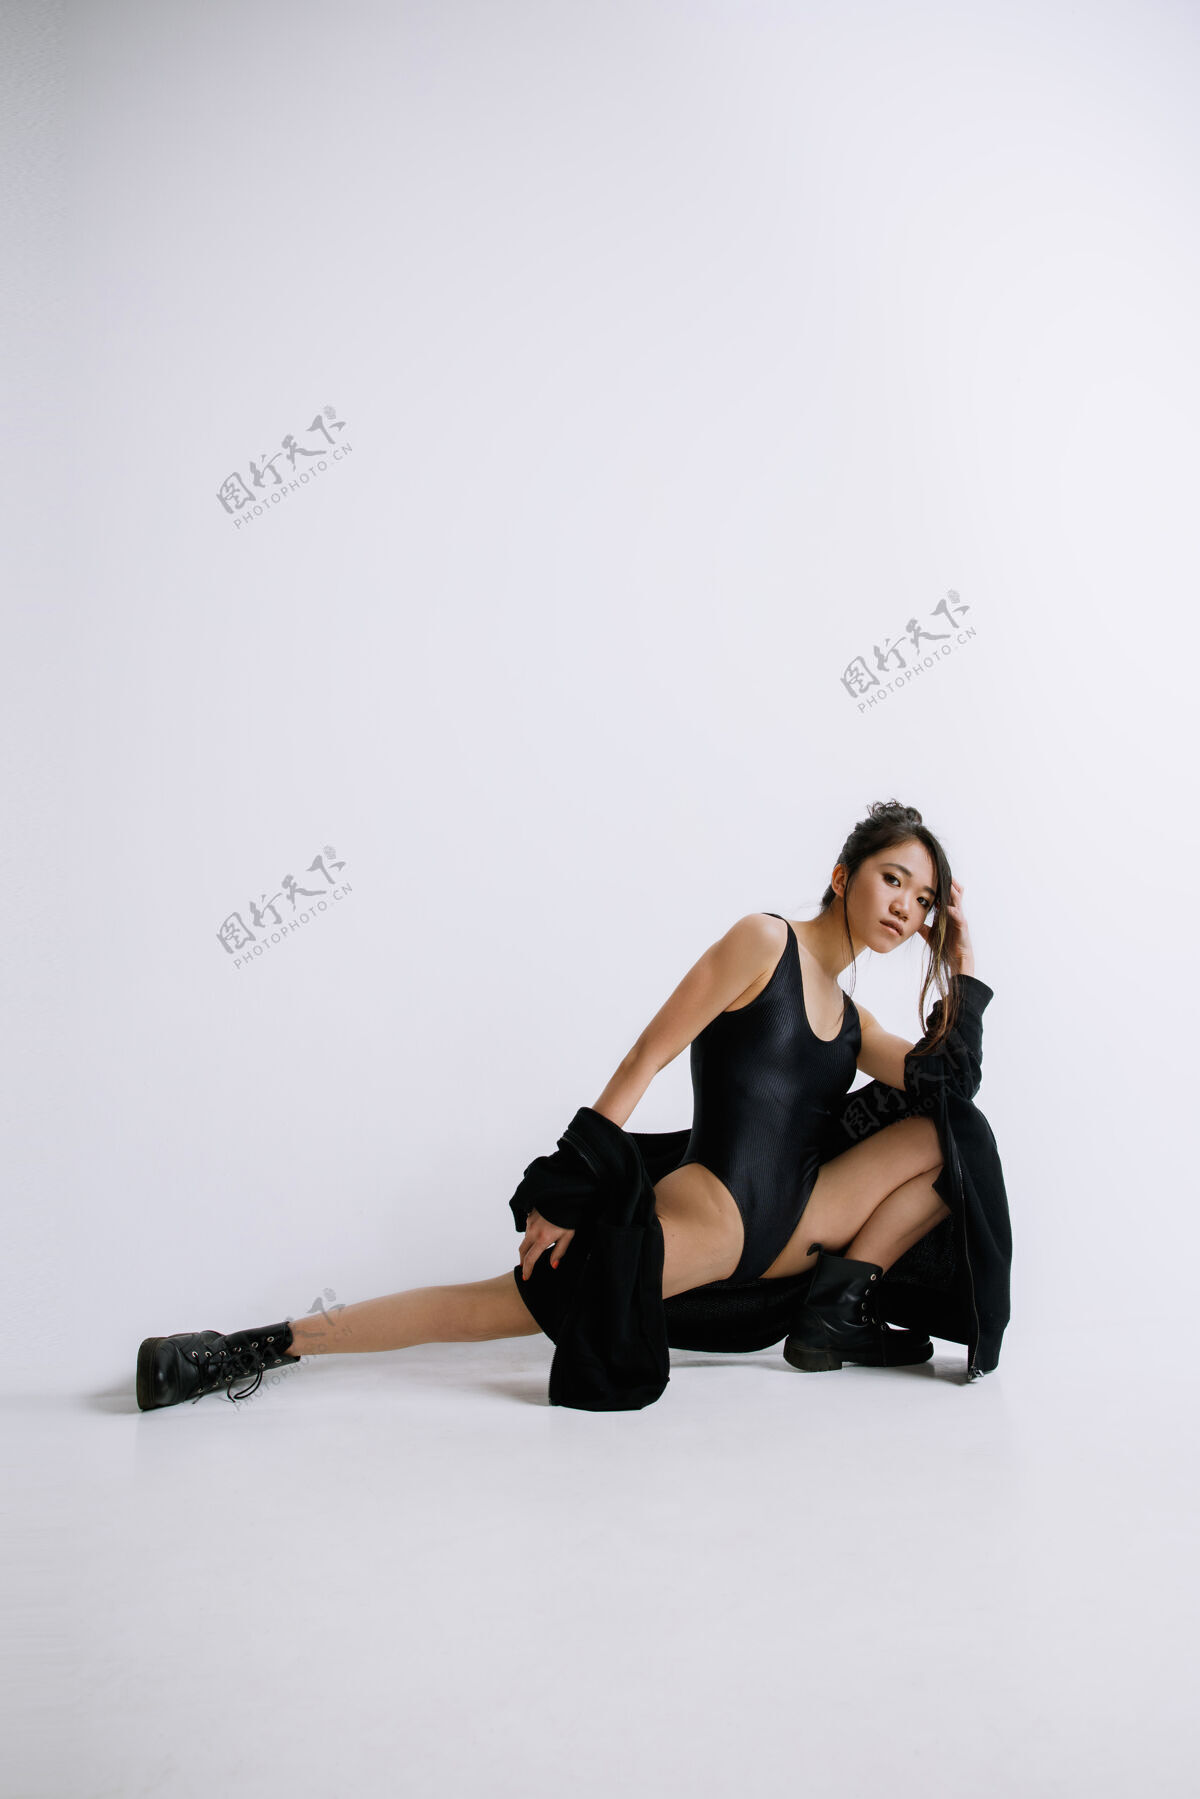 现代时尚芭蕾舞穿着黑色紧身衣的年轻女芭蕾舞演员亚洲芭蕾舞演员喜欢时尚模特风格 现代的舞蹈理念女人优雅年轻